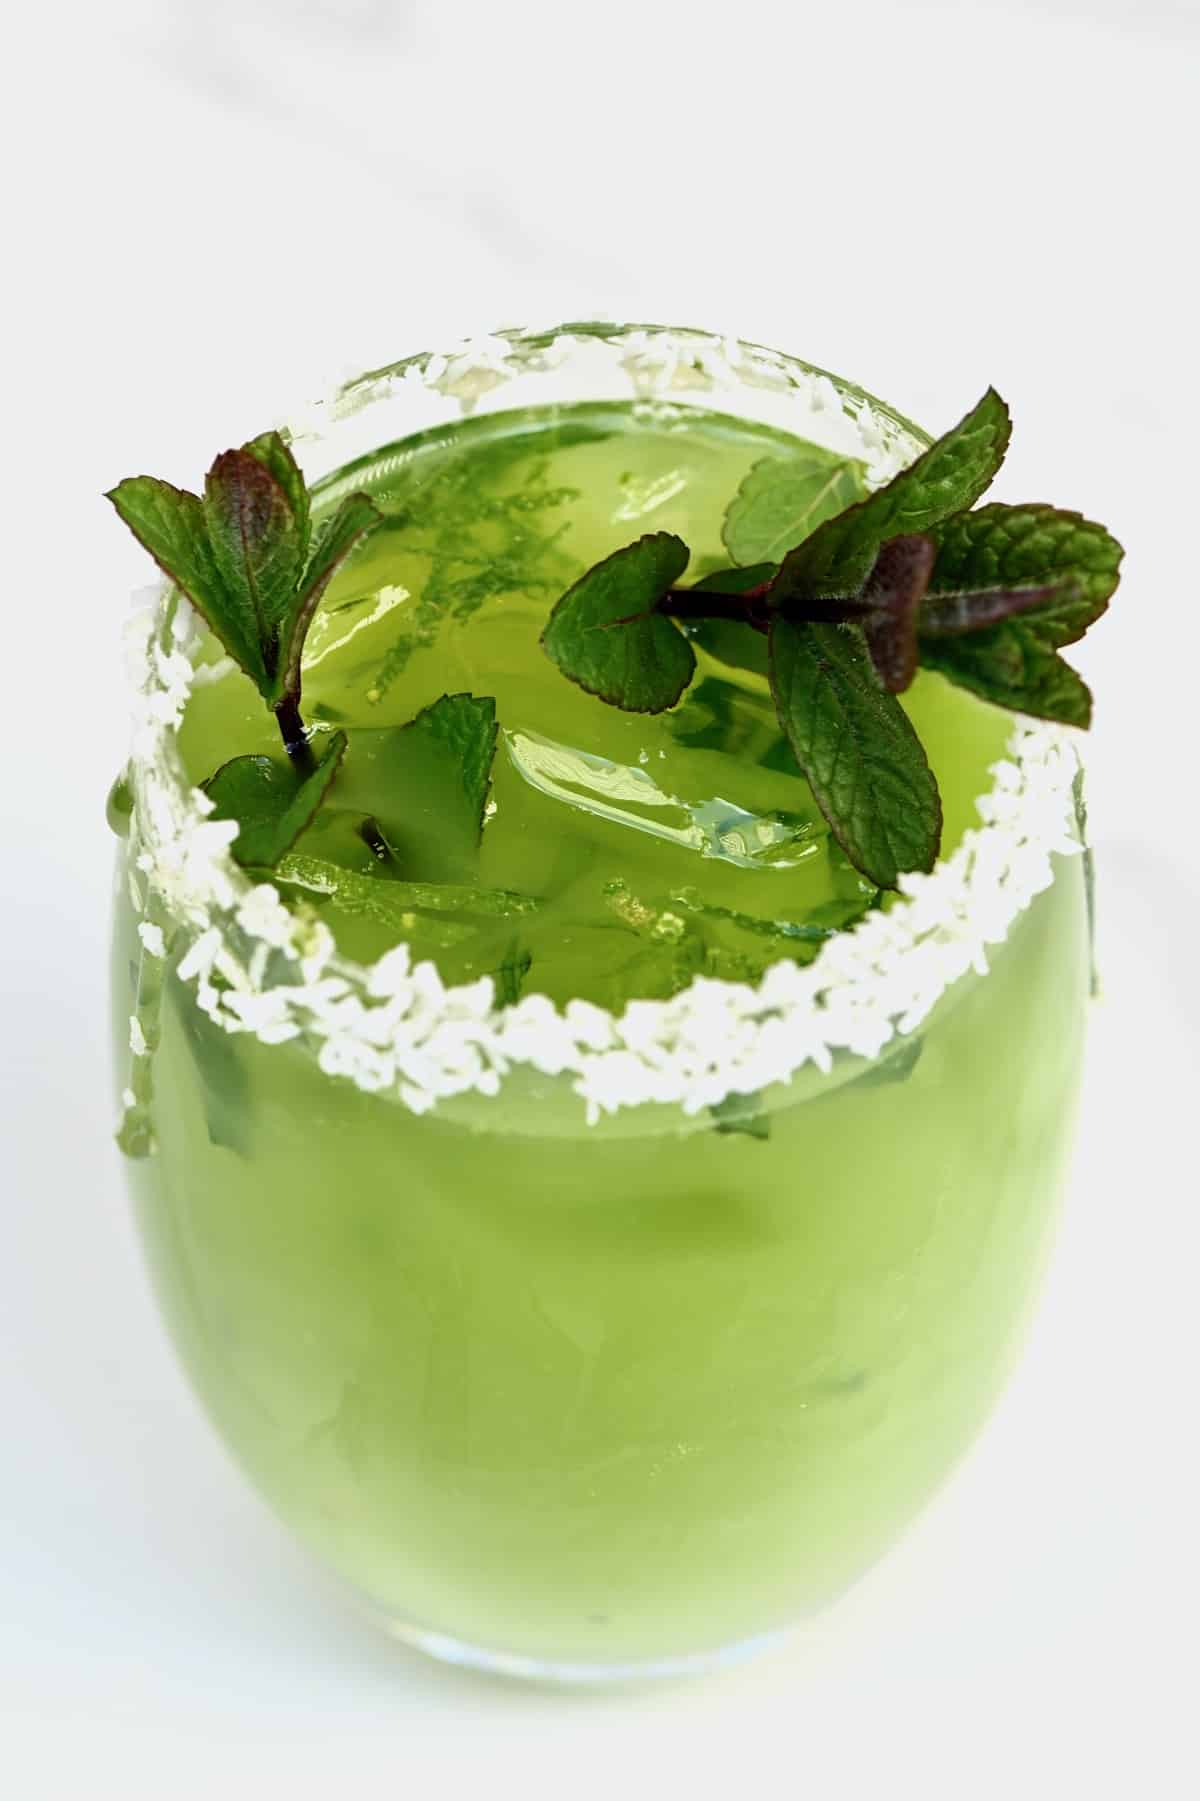 Cucumber lemonade in a glass